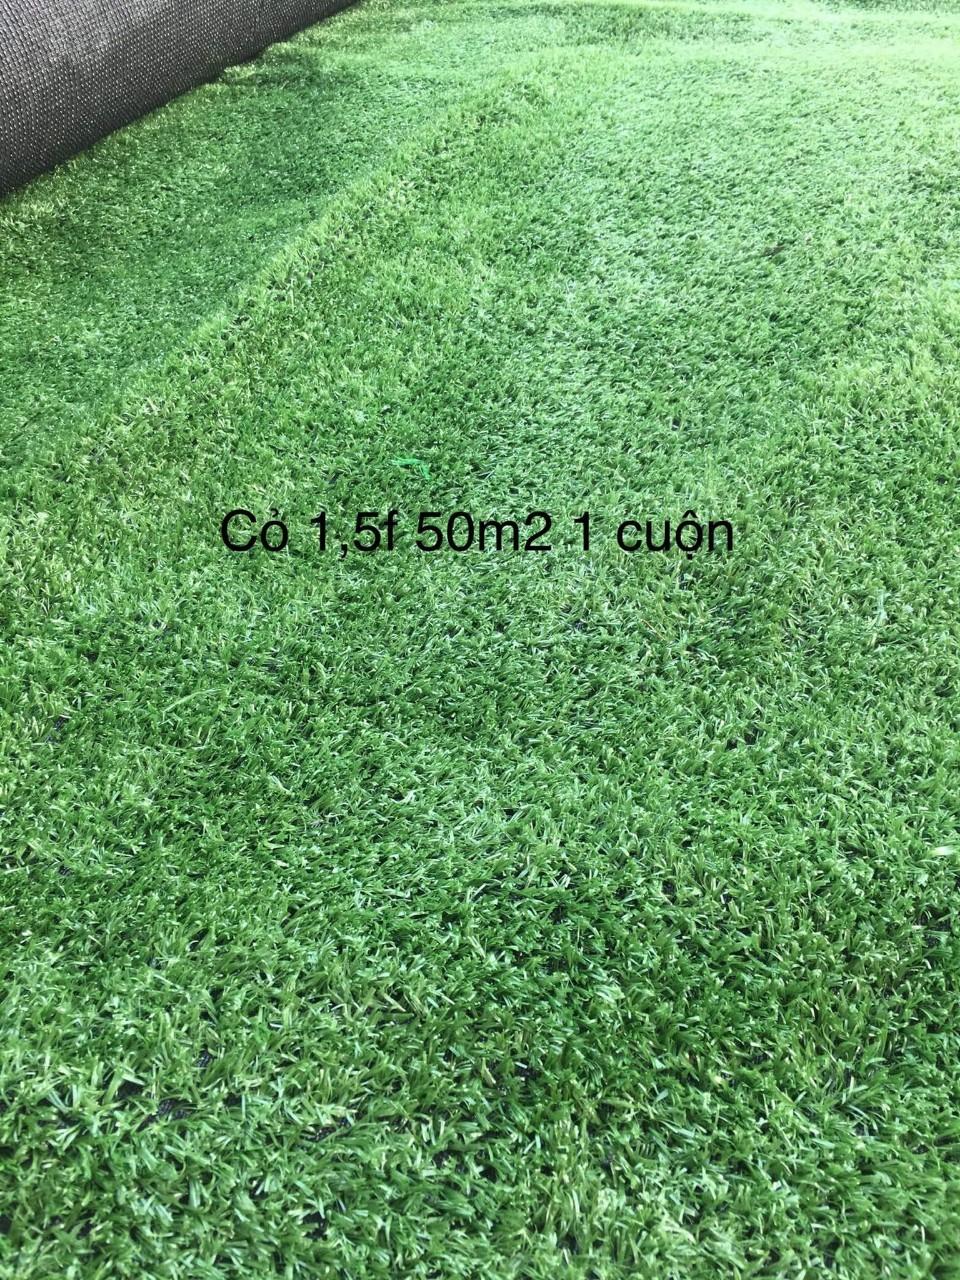 12 mét vuông thảm cỏ nhân tạo độ cao 1,5 cm(KT 2mx6m)